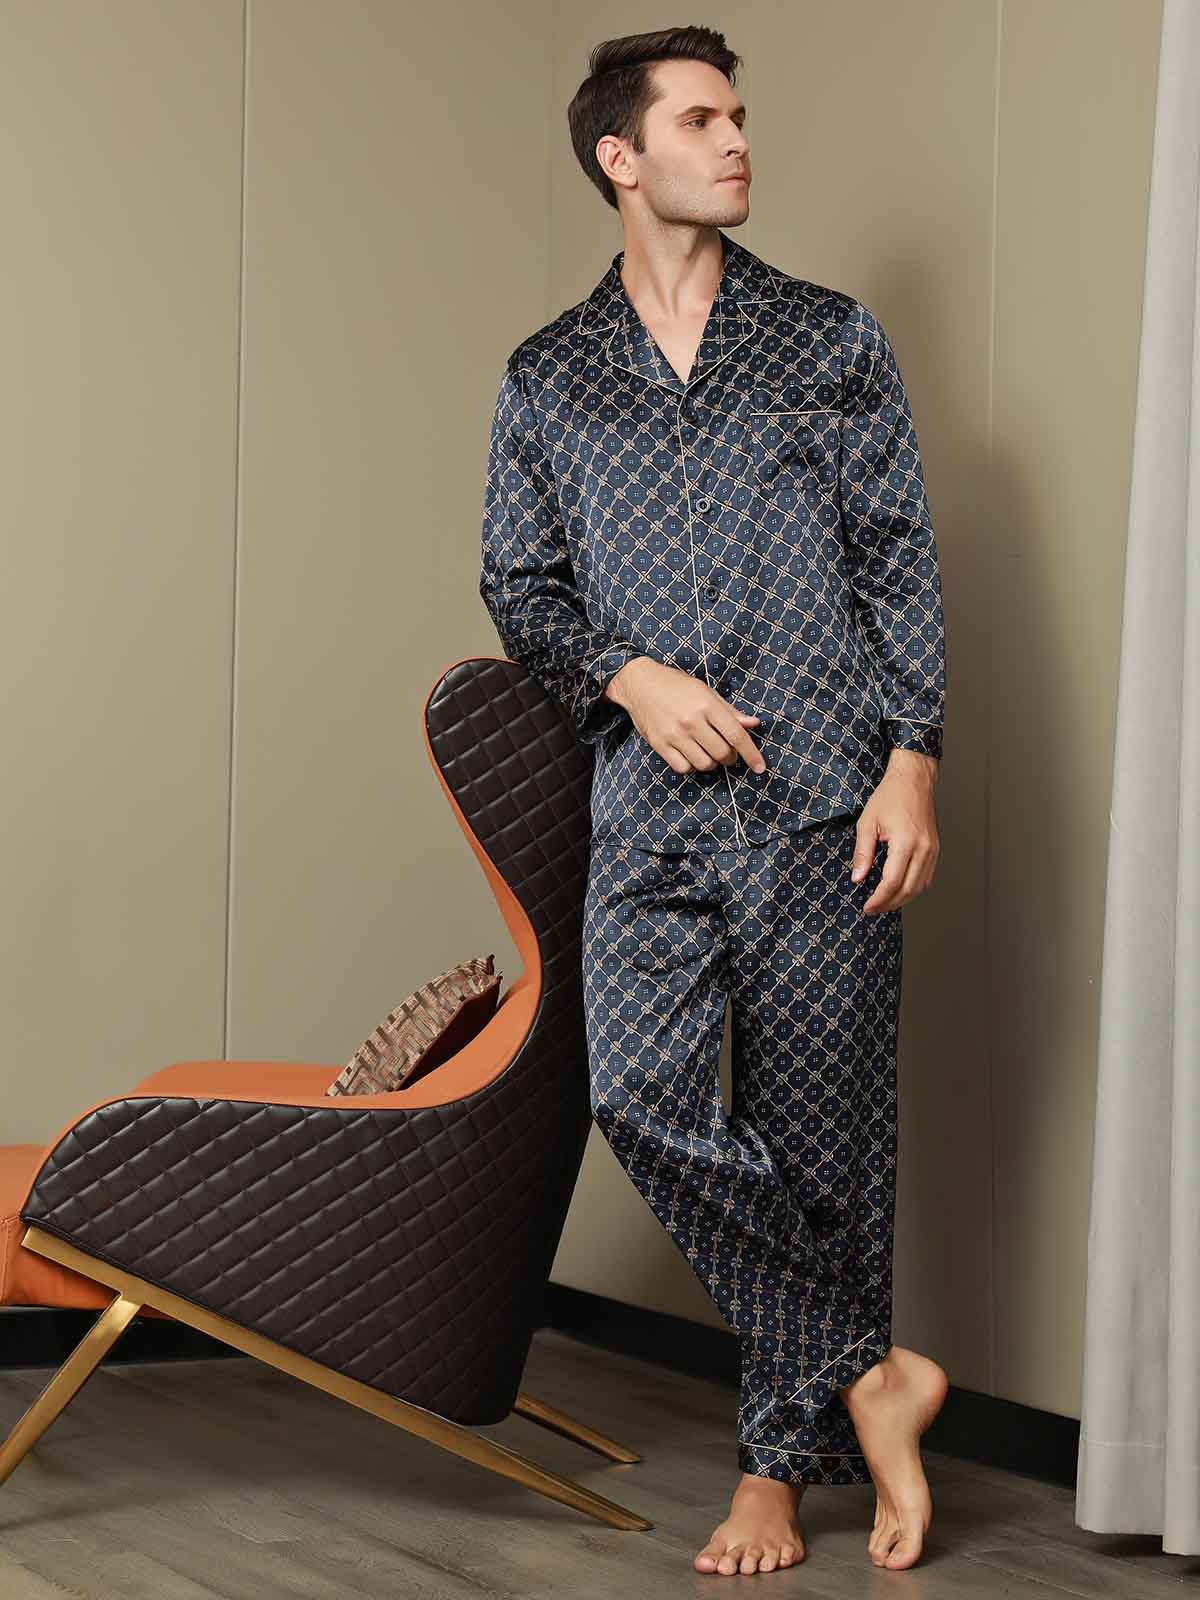 Men's Silk Robe Luxury Pure Mulberry Silk Sleepwear with Pockets